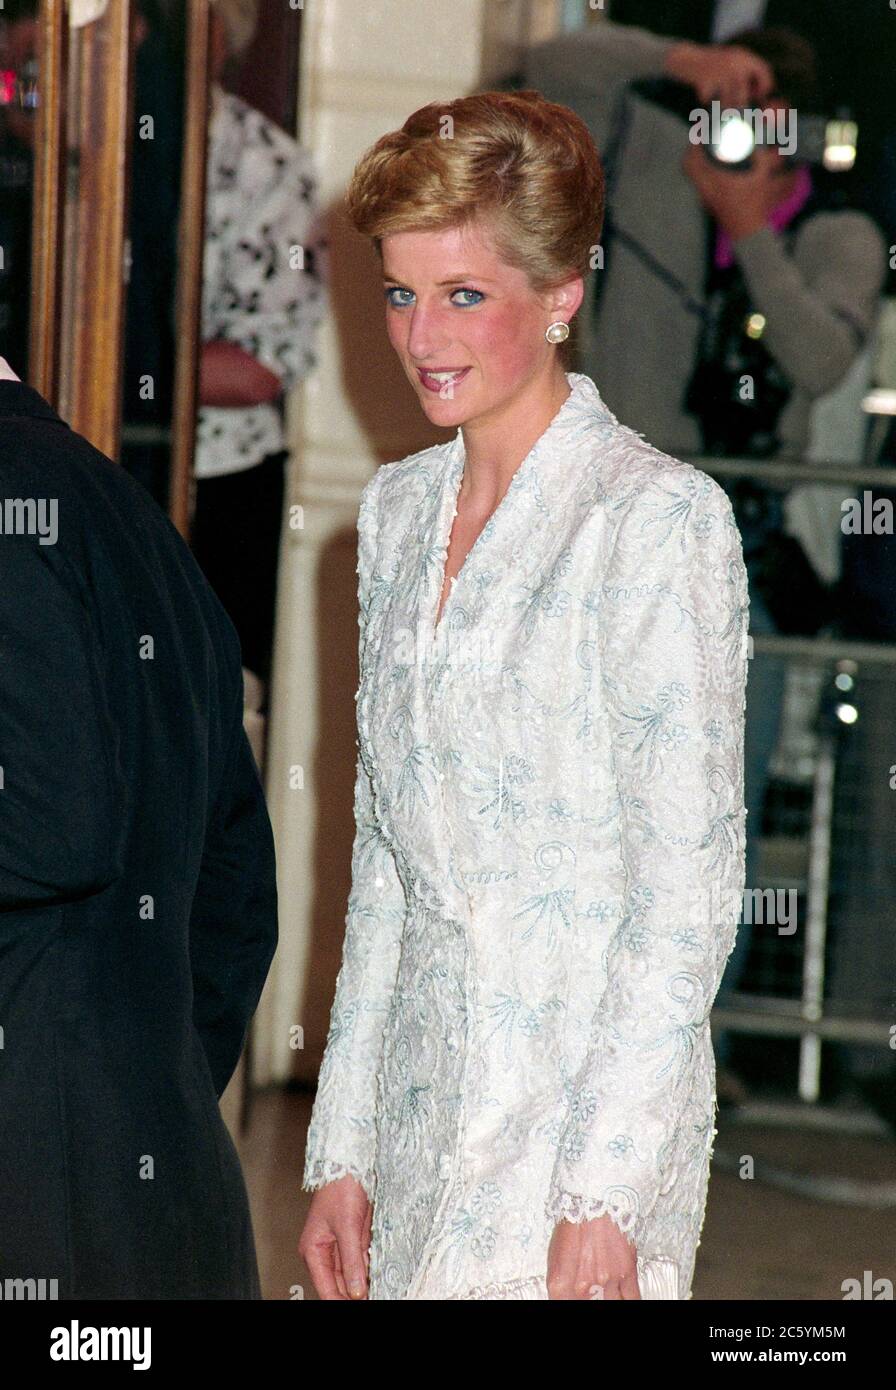 ARCHIV: LONDON, GROSSBRITANNIEN: C. 1989: S.H. Diana, Prinzessin von Wales. Datei Foto © Paul Smith/Featureflash Stockfoto